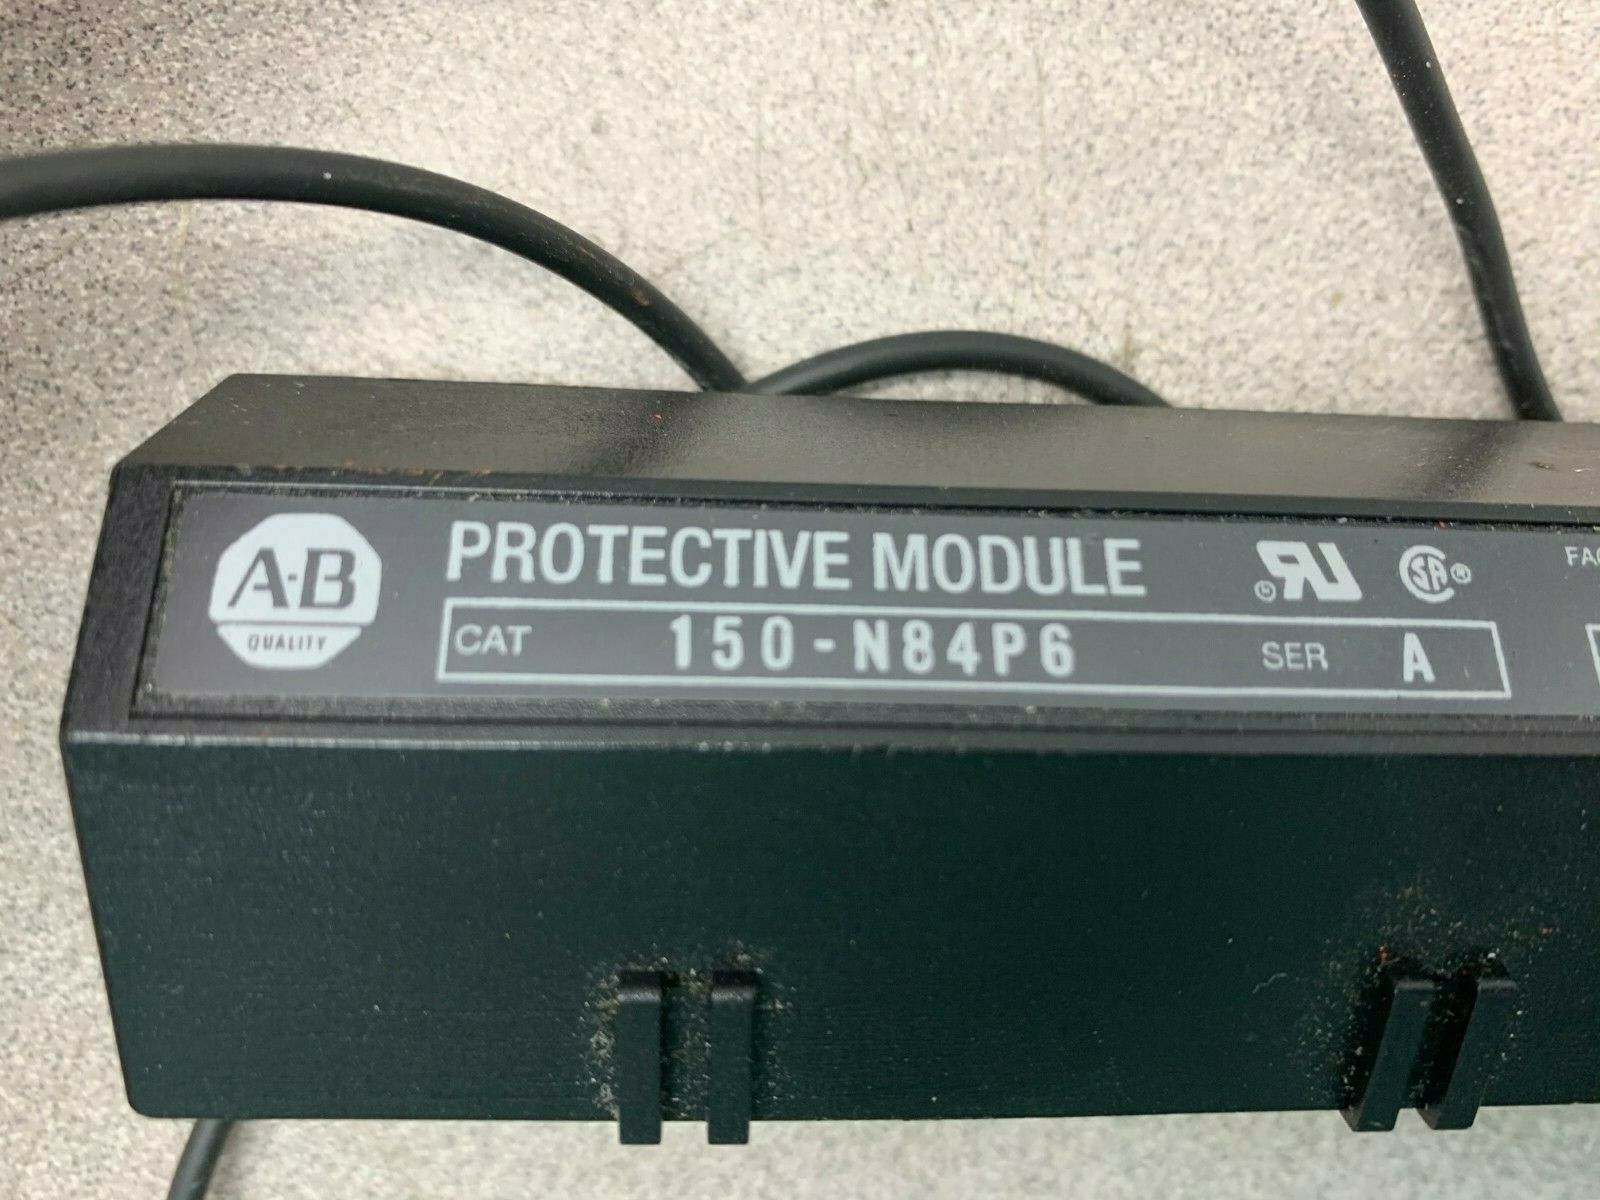 USED ALLEN BRADLEY PROTECTIVE MODULE 150-N84P6